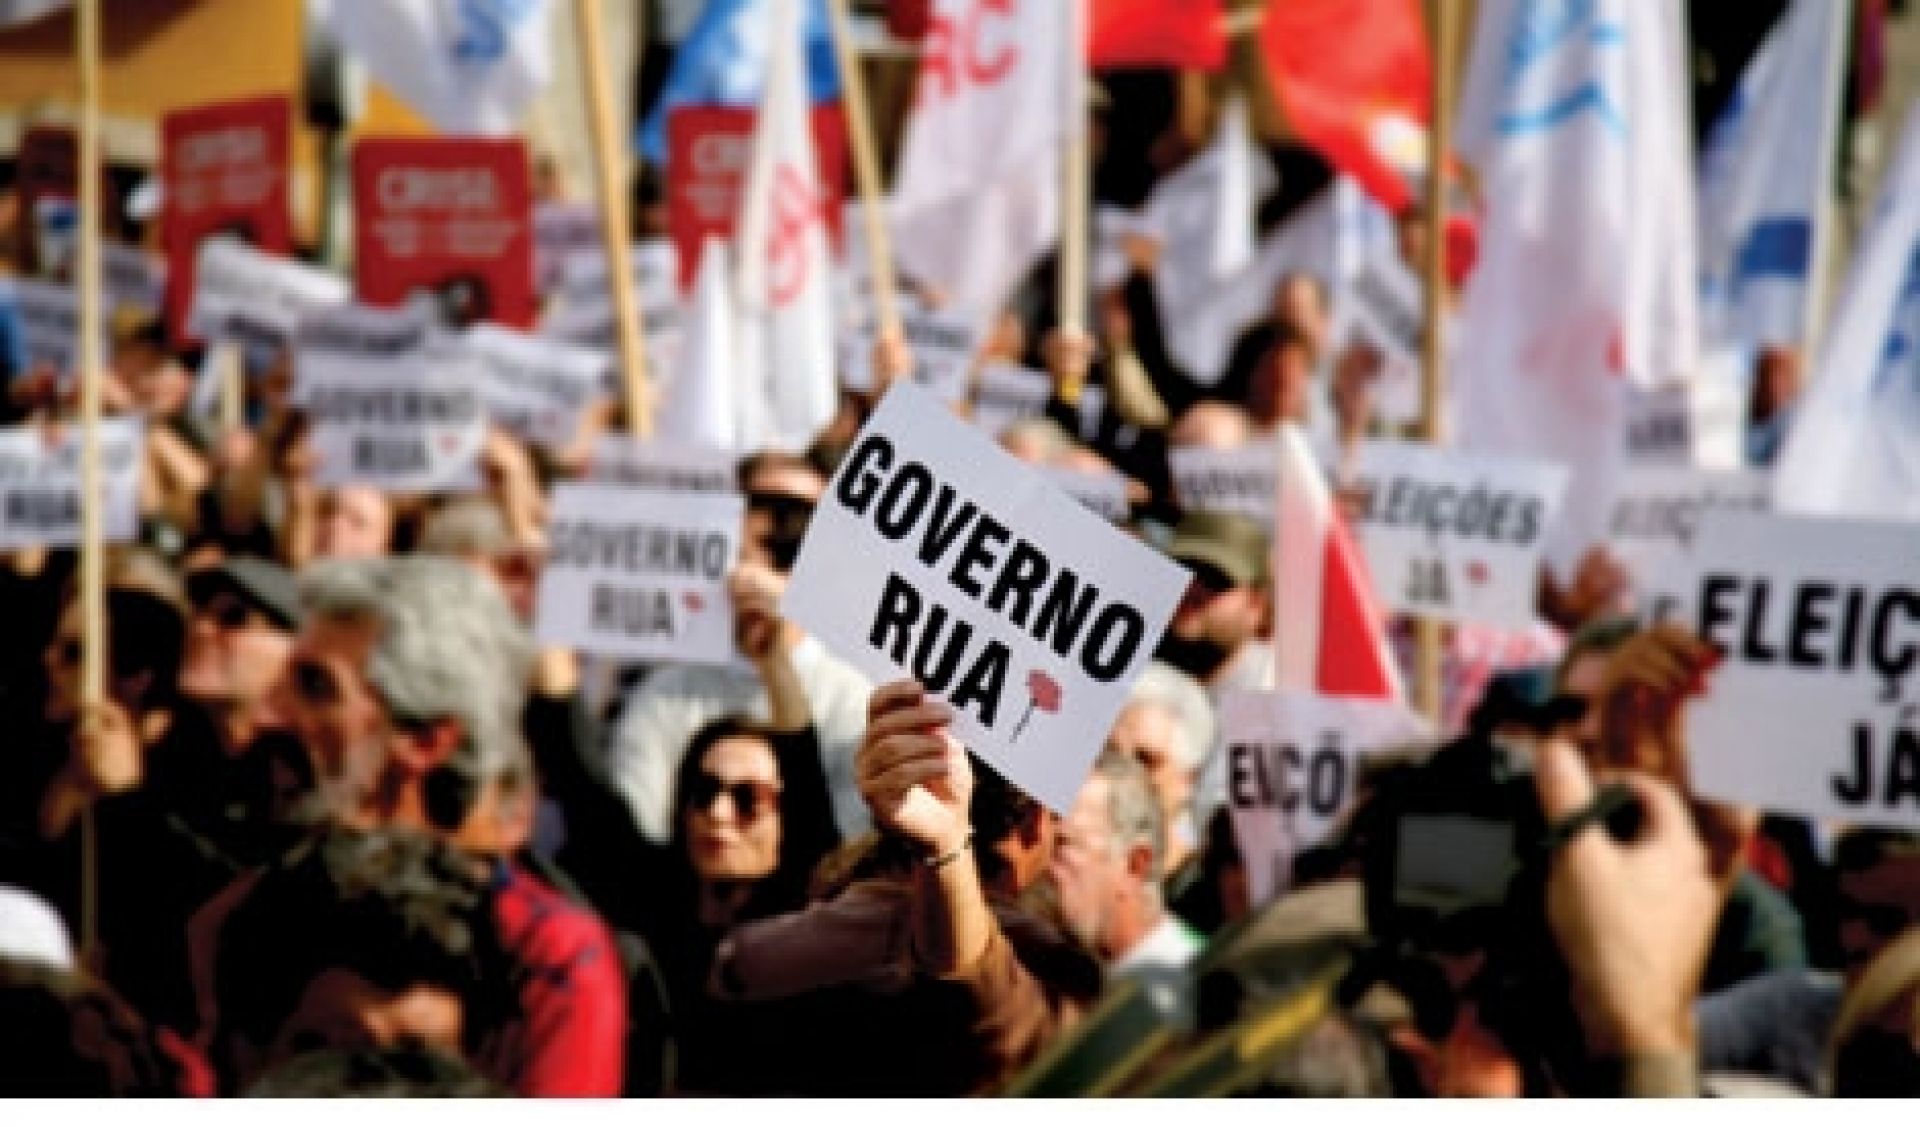 Portogallo: è possibile un governo di sinistra?